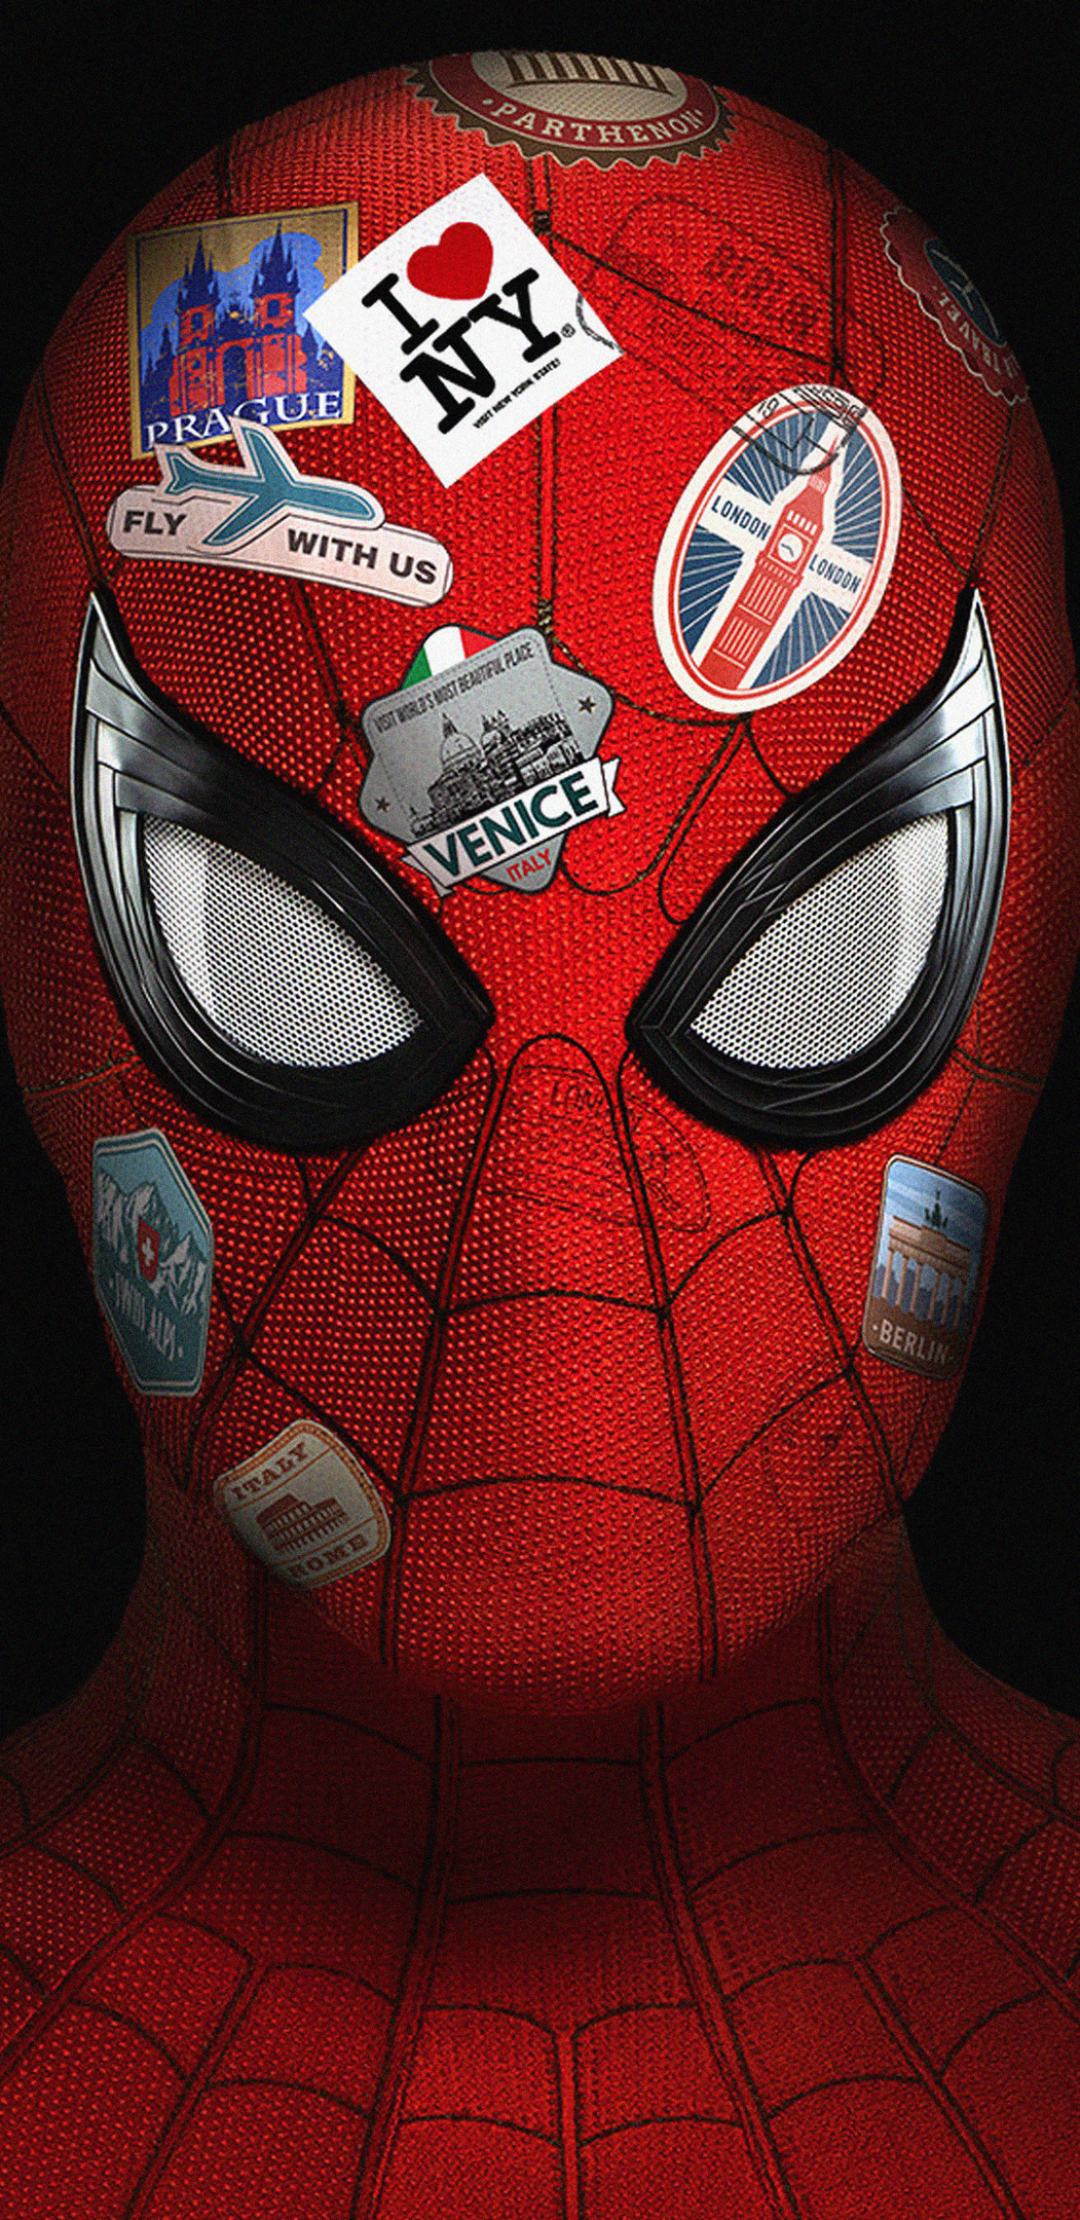 Handy-Wallpaper Filme, Spider Man, Spider Man: Far From Home kostenlos herunterladen.